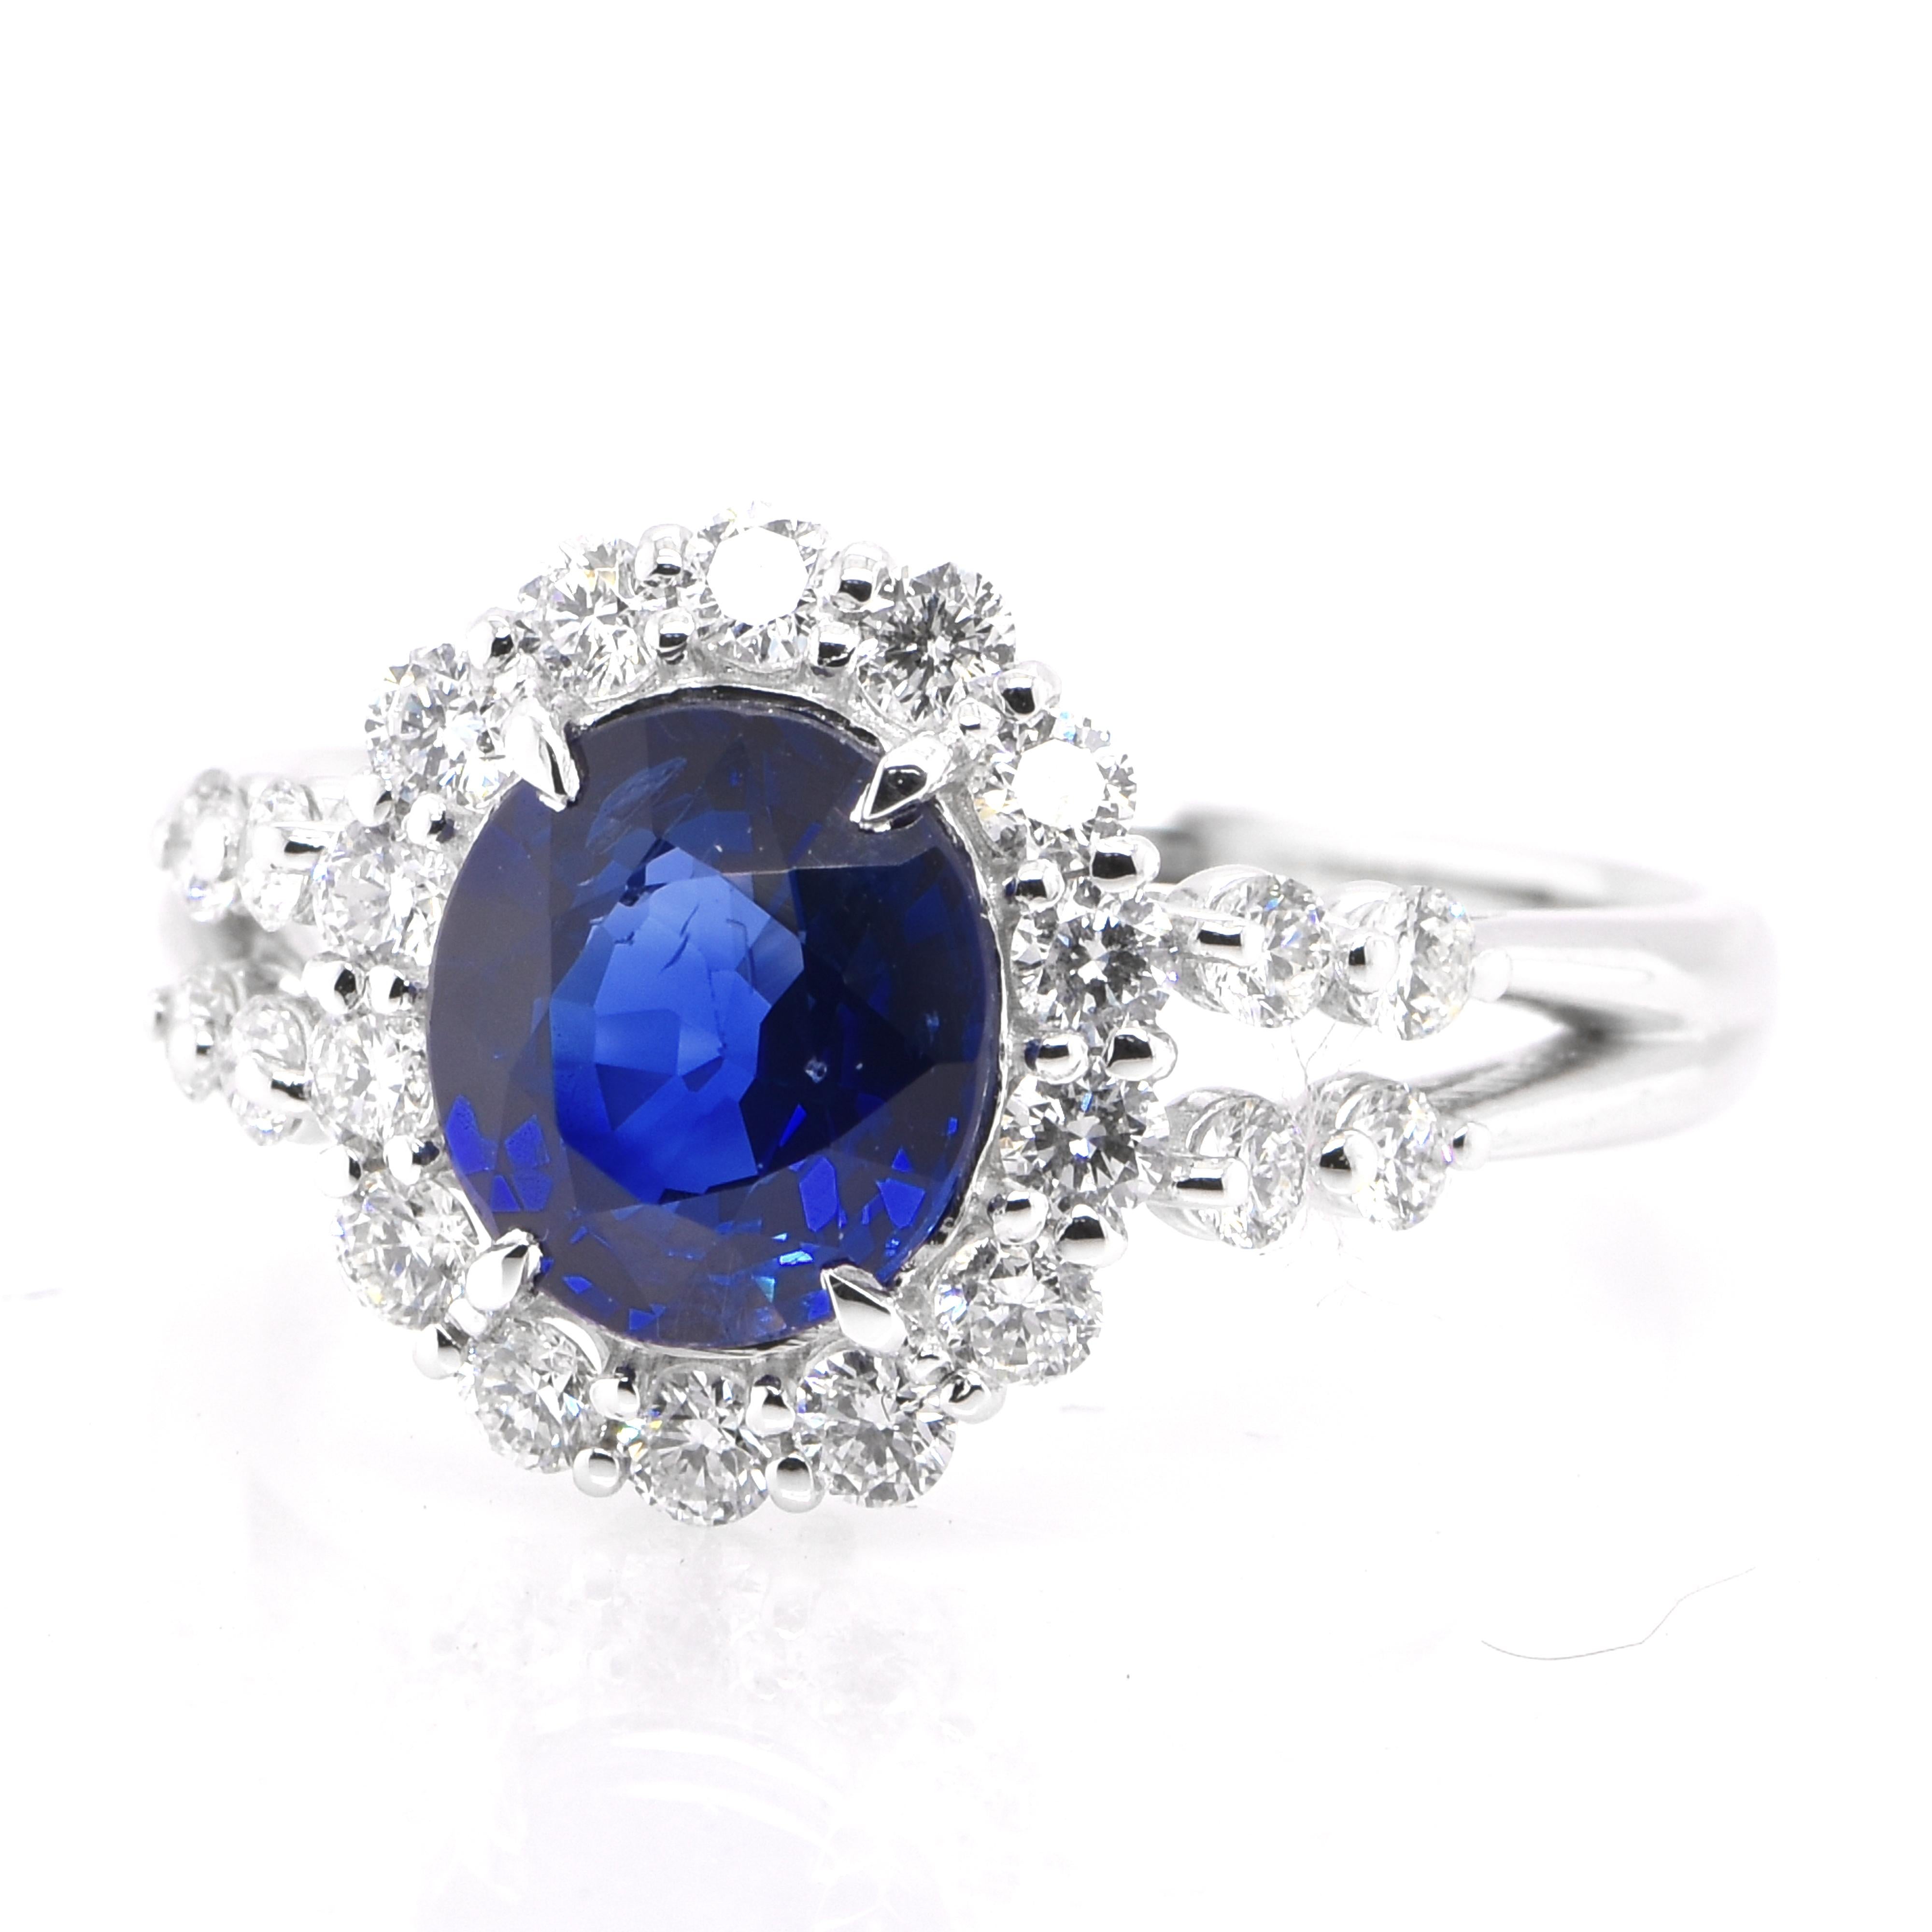 Ein wunderschöner Ring mit einem GIA-zertifizierten 1,77-karätigen natürlichen blauen Saphir aus Madagaskar und 0,59-karätigen Diamanten in Platin. Saphire haben eine außergewöhnliche Haltbarkeit - sie zeichnen sich durch Härte, Zähigkeit und